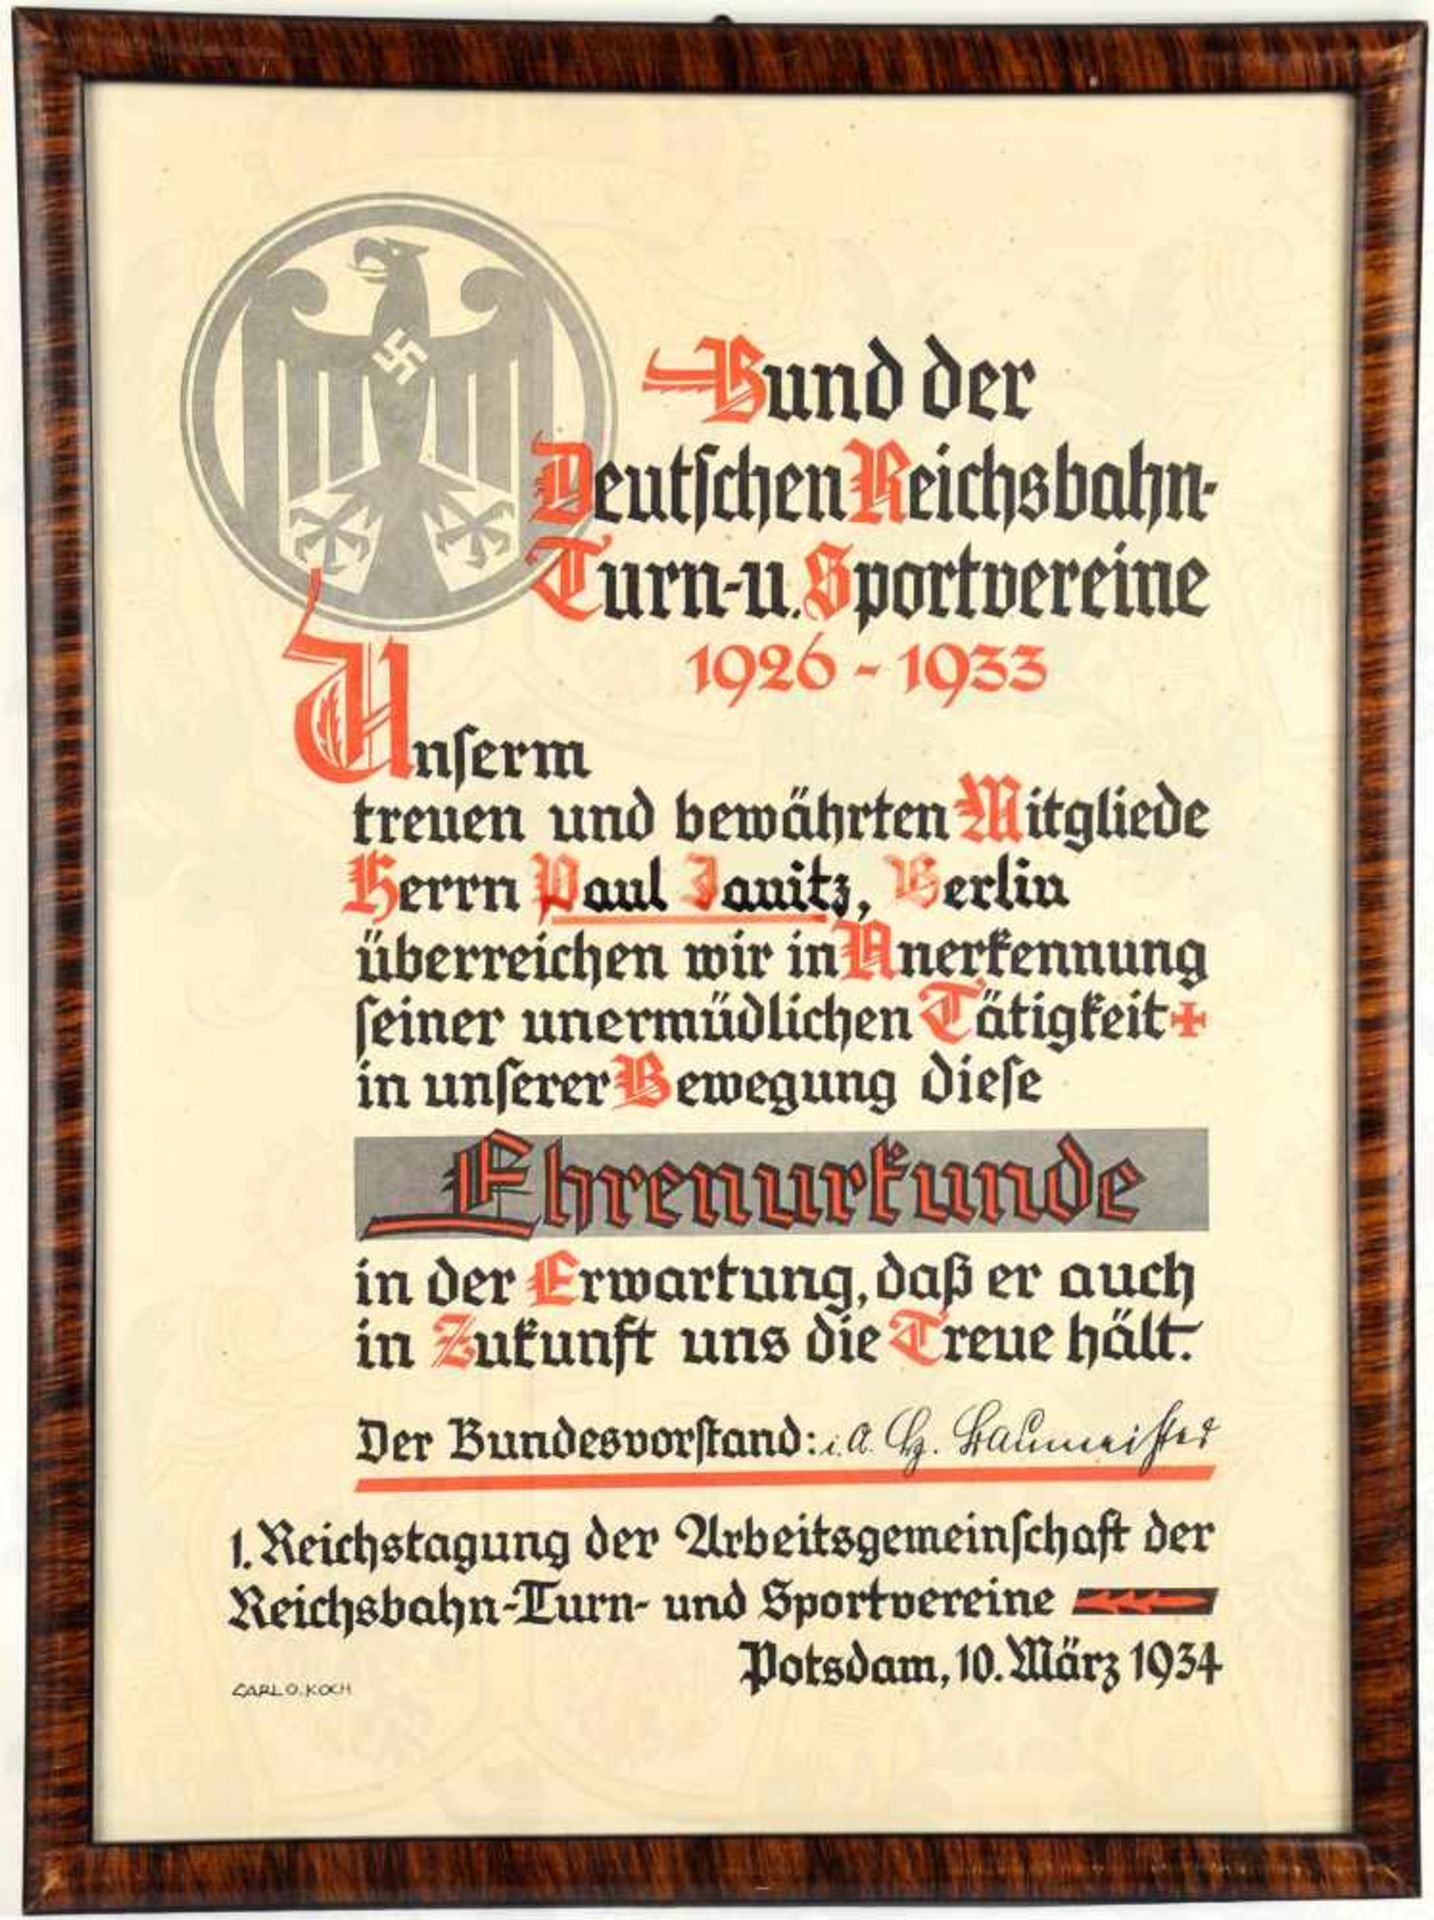 EHRENURKUNDE 1926-1933, Bund d. Dt. Reichsbahn-Turn- u. Sportvereine, ausgestellt, Potsdam, 10.3.